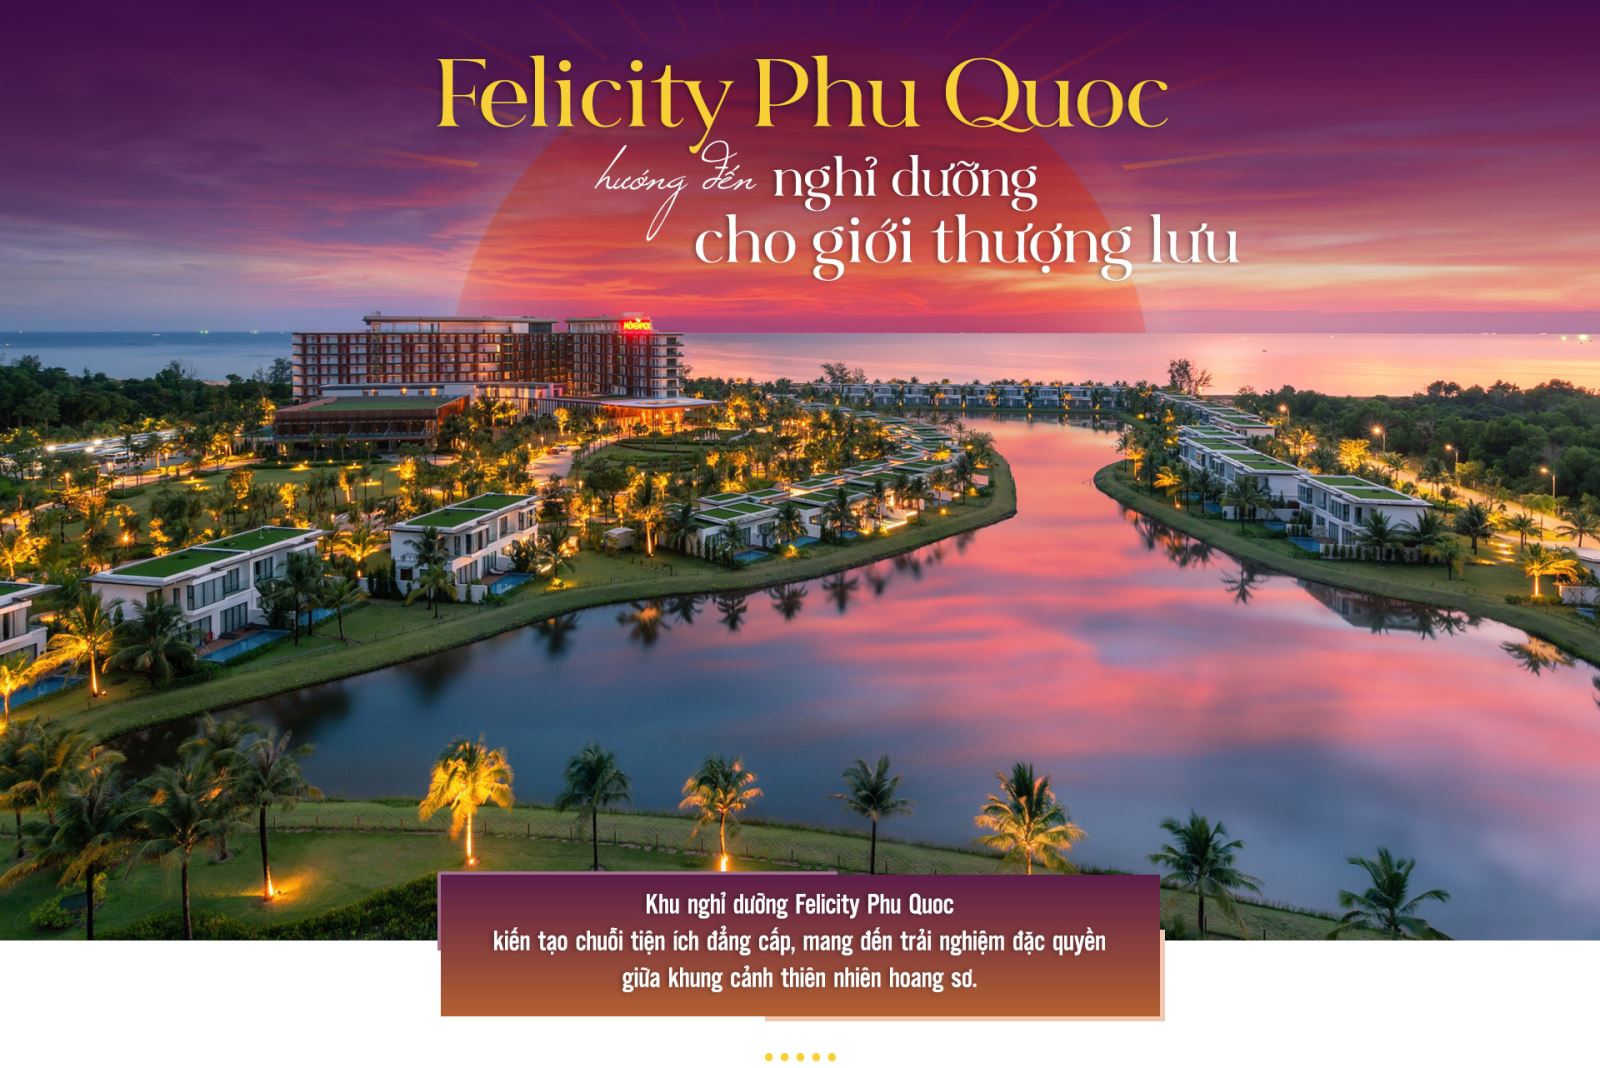 Giải mã những cung bậc hạnh phúc tại Felicity Phu Quoc